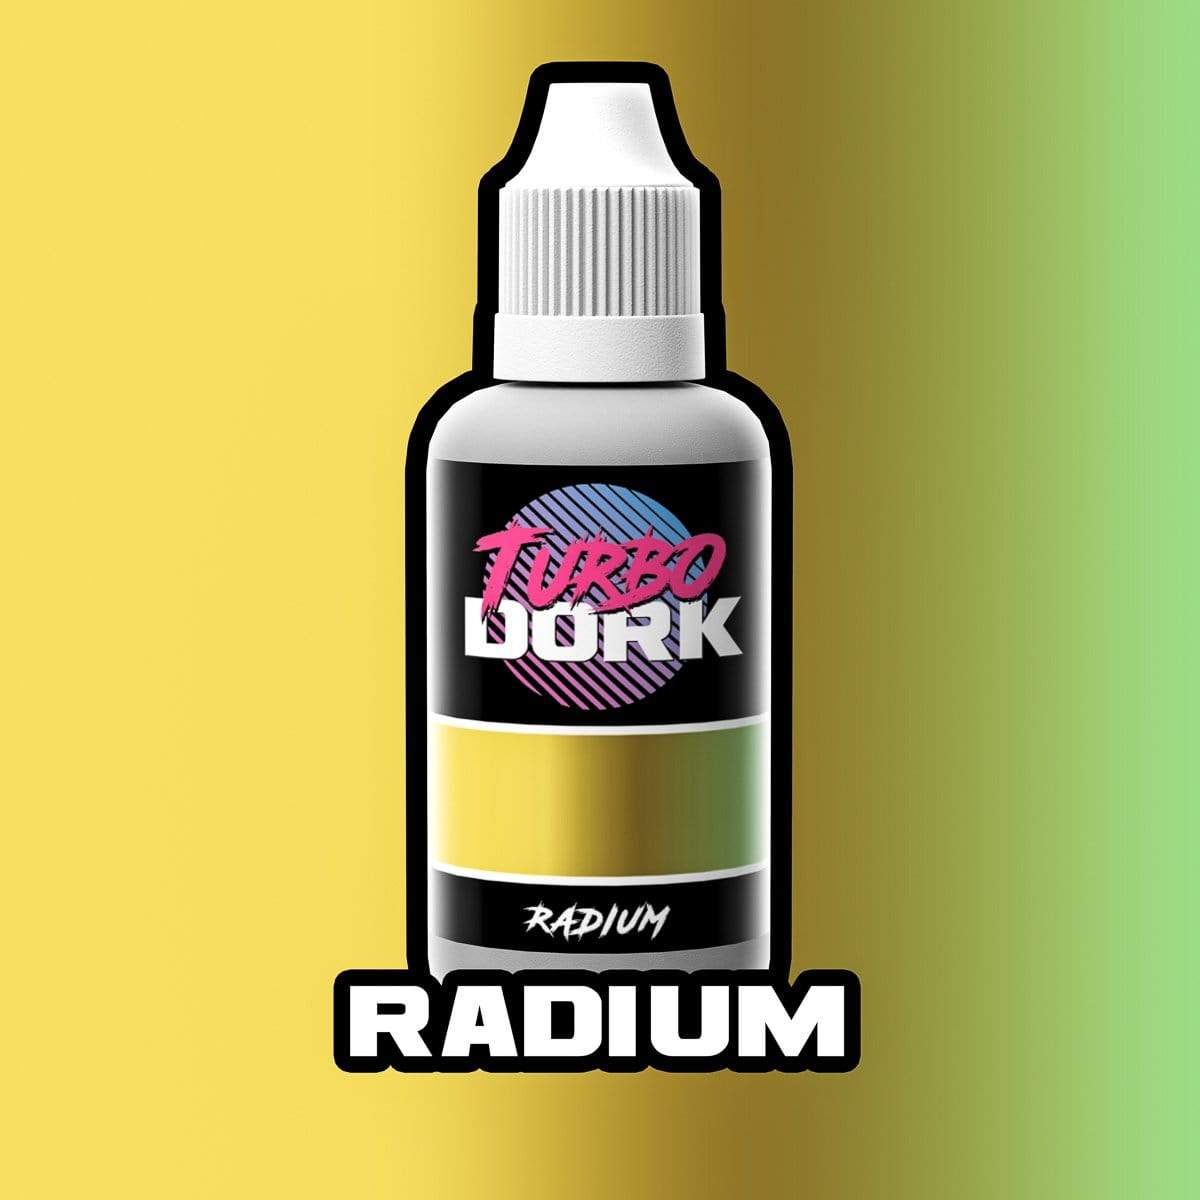 Radium Colorshift Acrylic Paint Turboshift Turbo Dork Exit 23 Games Radium Colorshift Acrylic Paint